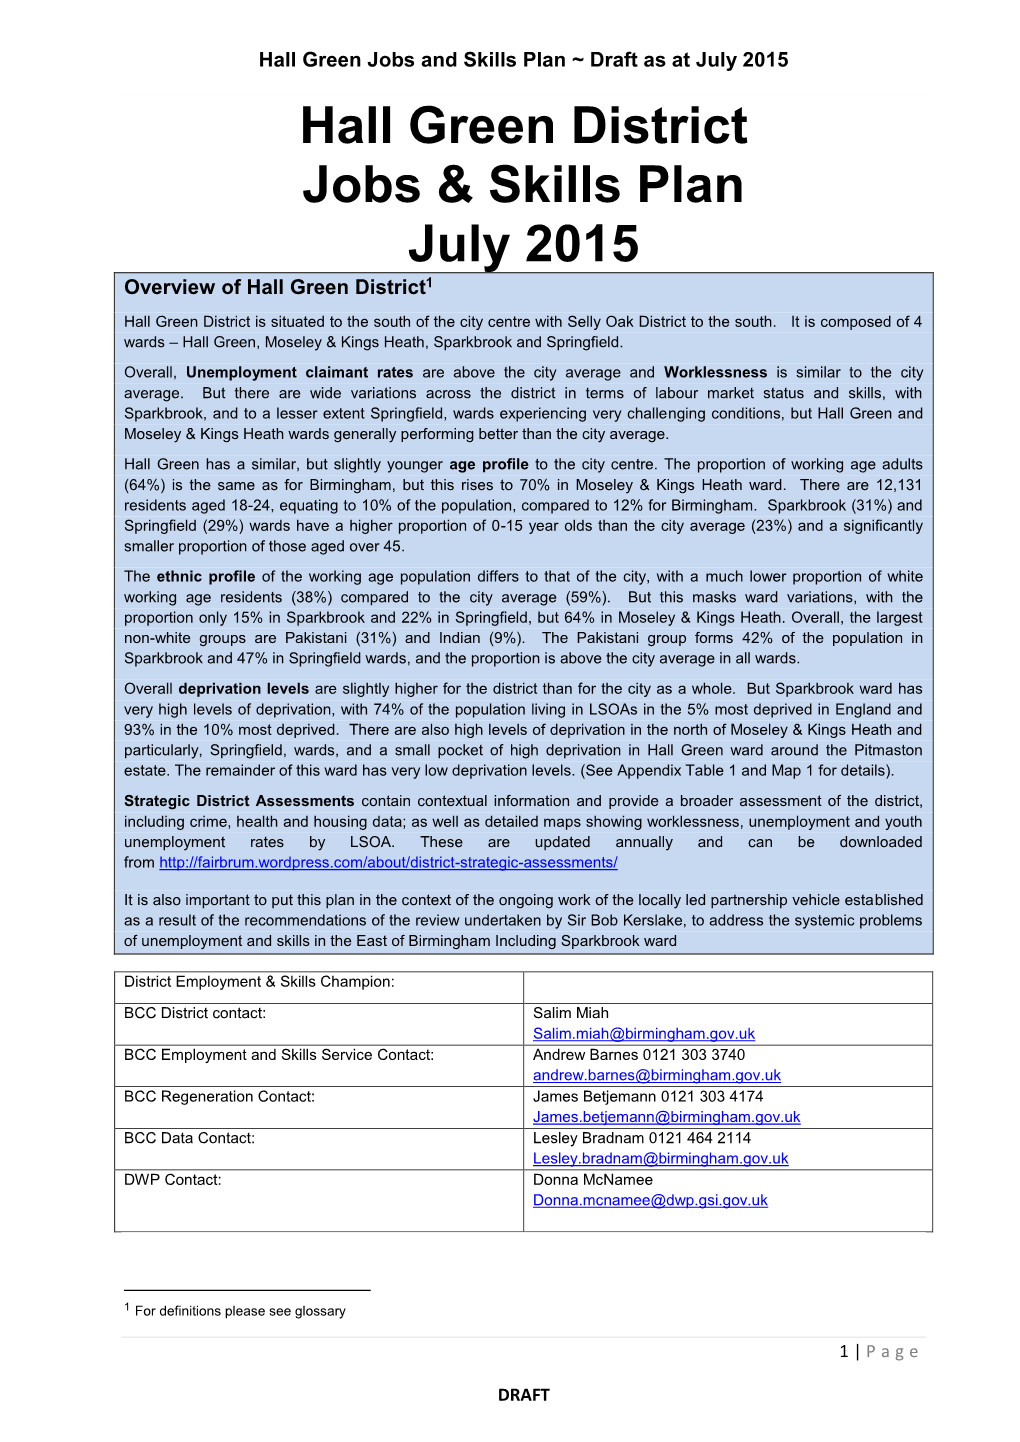 Hall Green District Jobs & Skills Plan July 2015